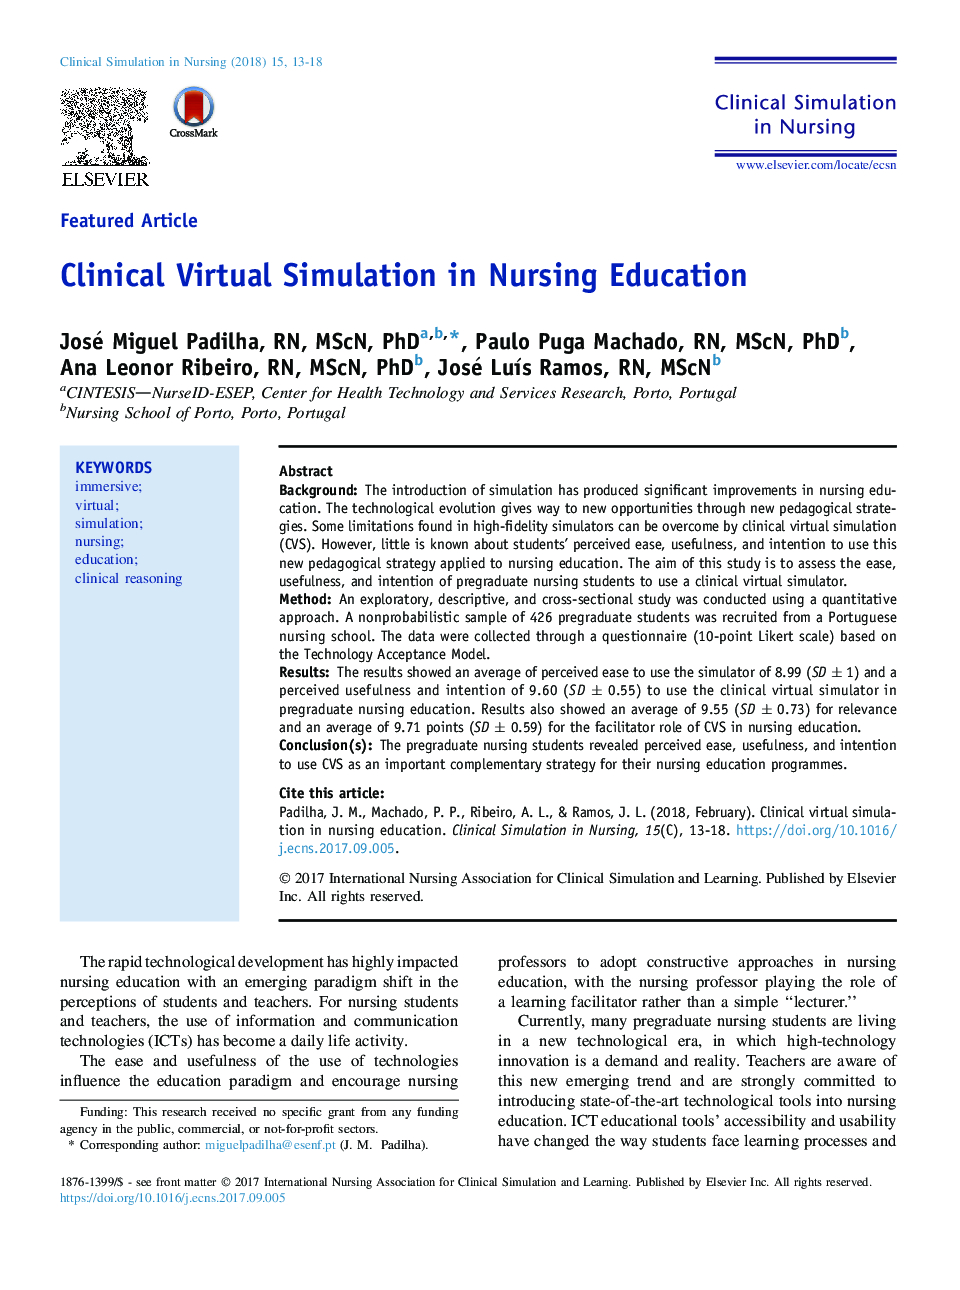 شبیه سازی مجازی بالینی در آموزش پرستاری 